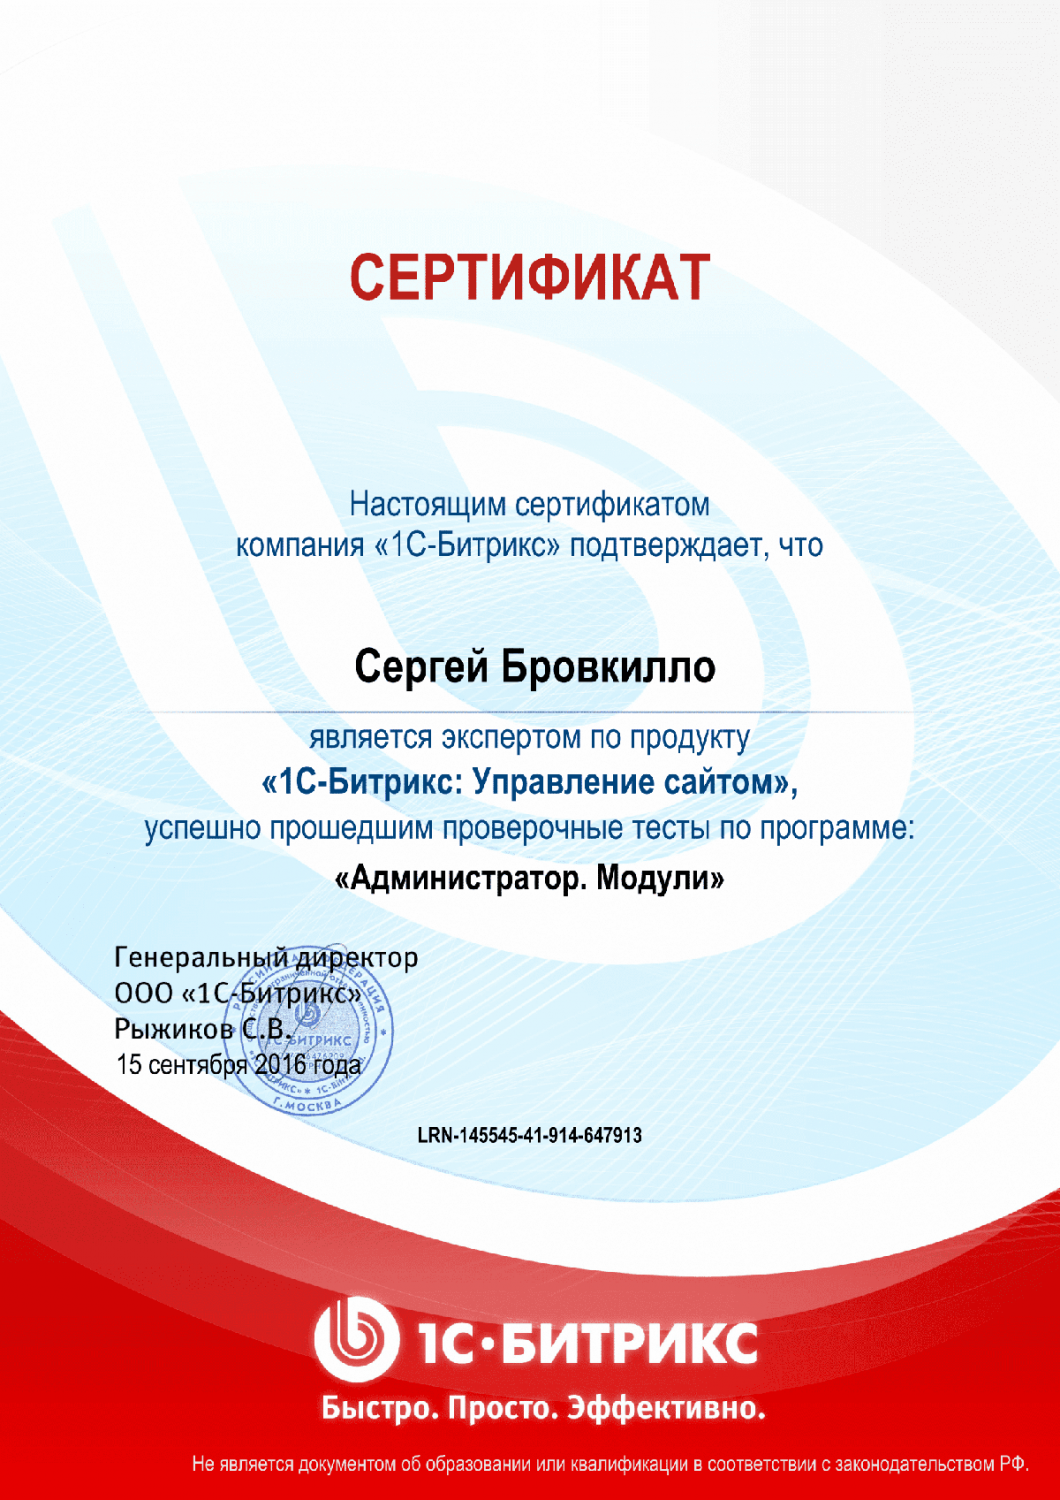 Сертификат эксперта по программе "Администратор. Модули" в Саранска